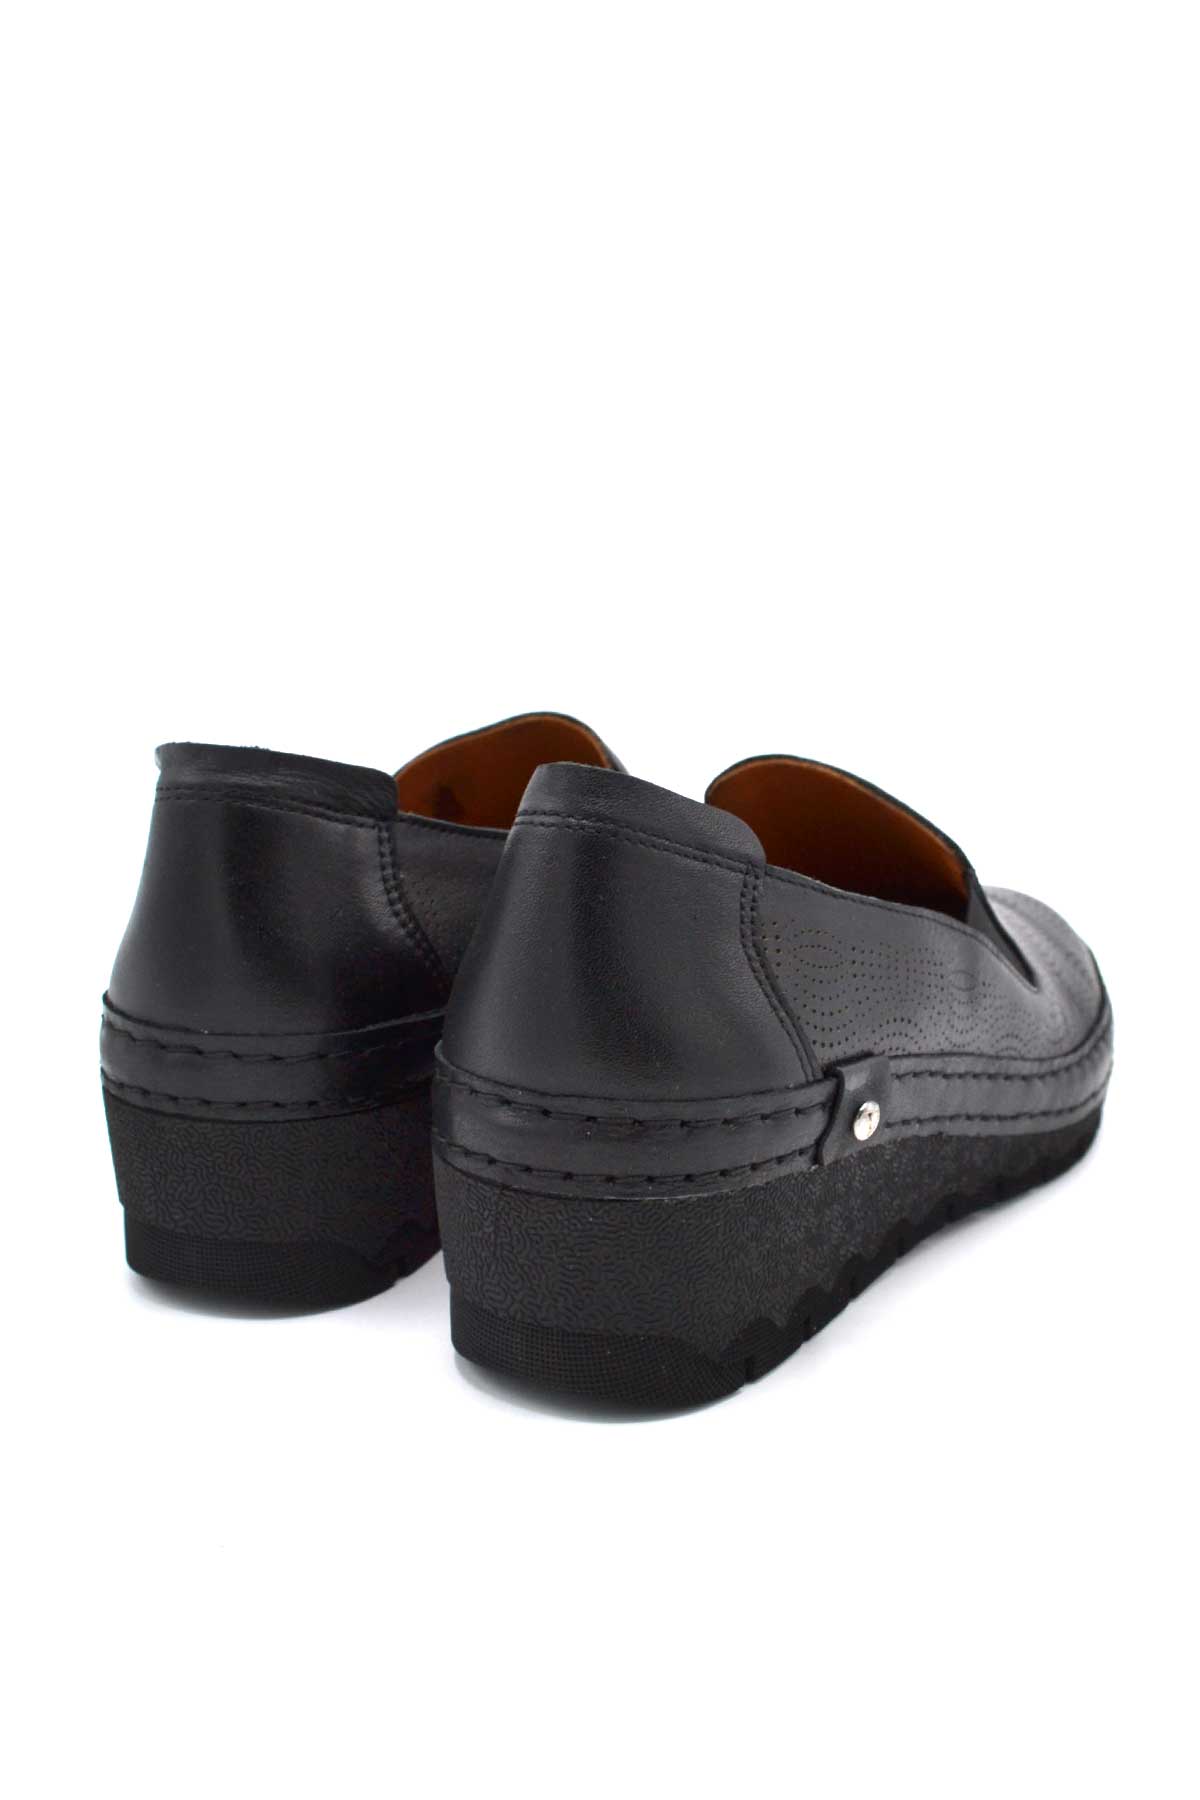 Kadın Casual Deri Sneakers Siyah 2213501Y